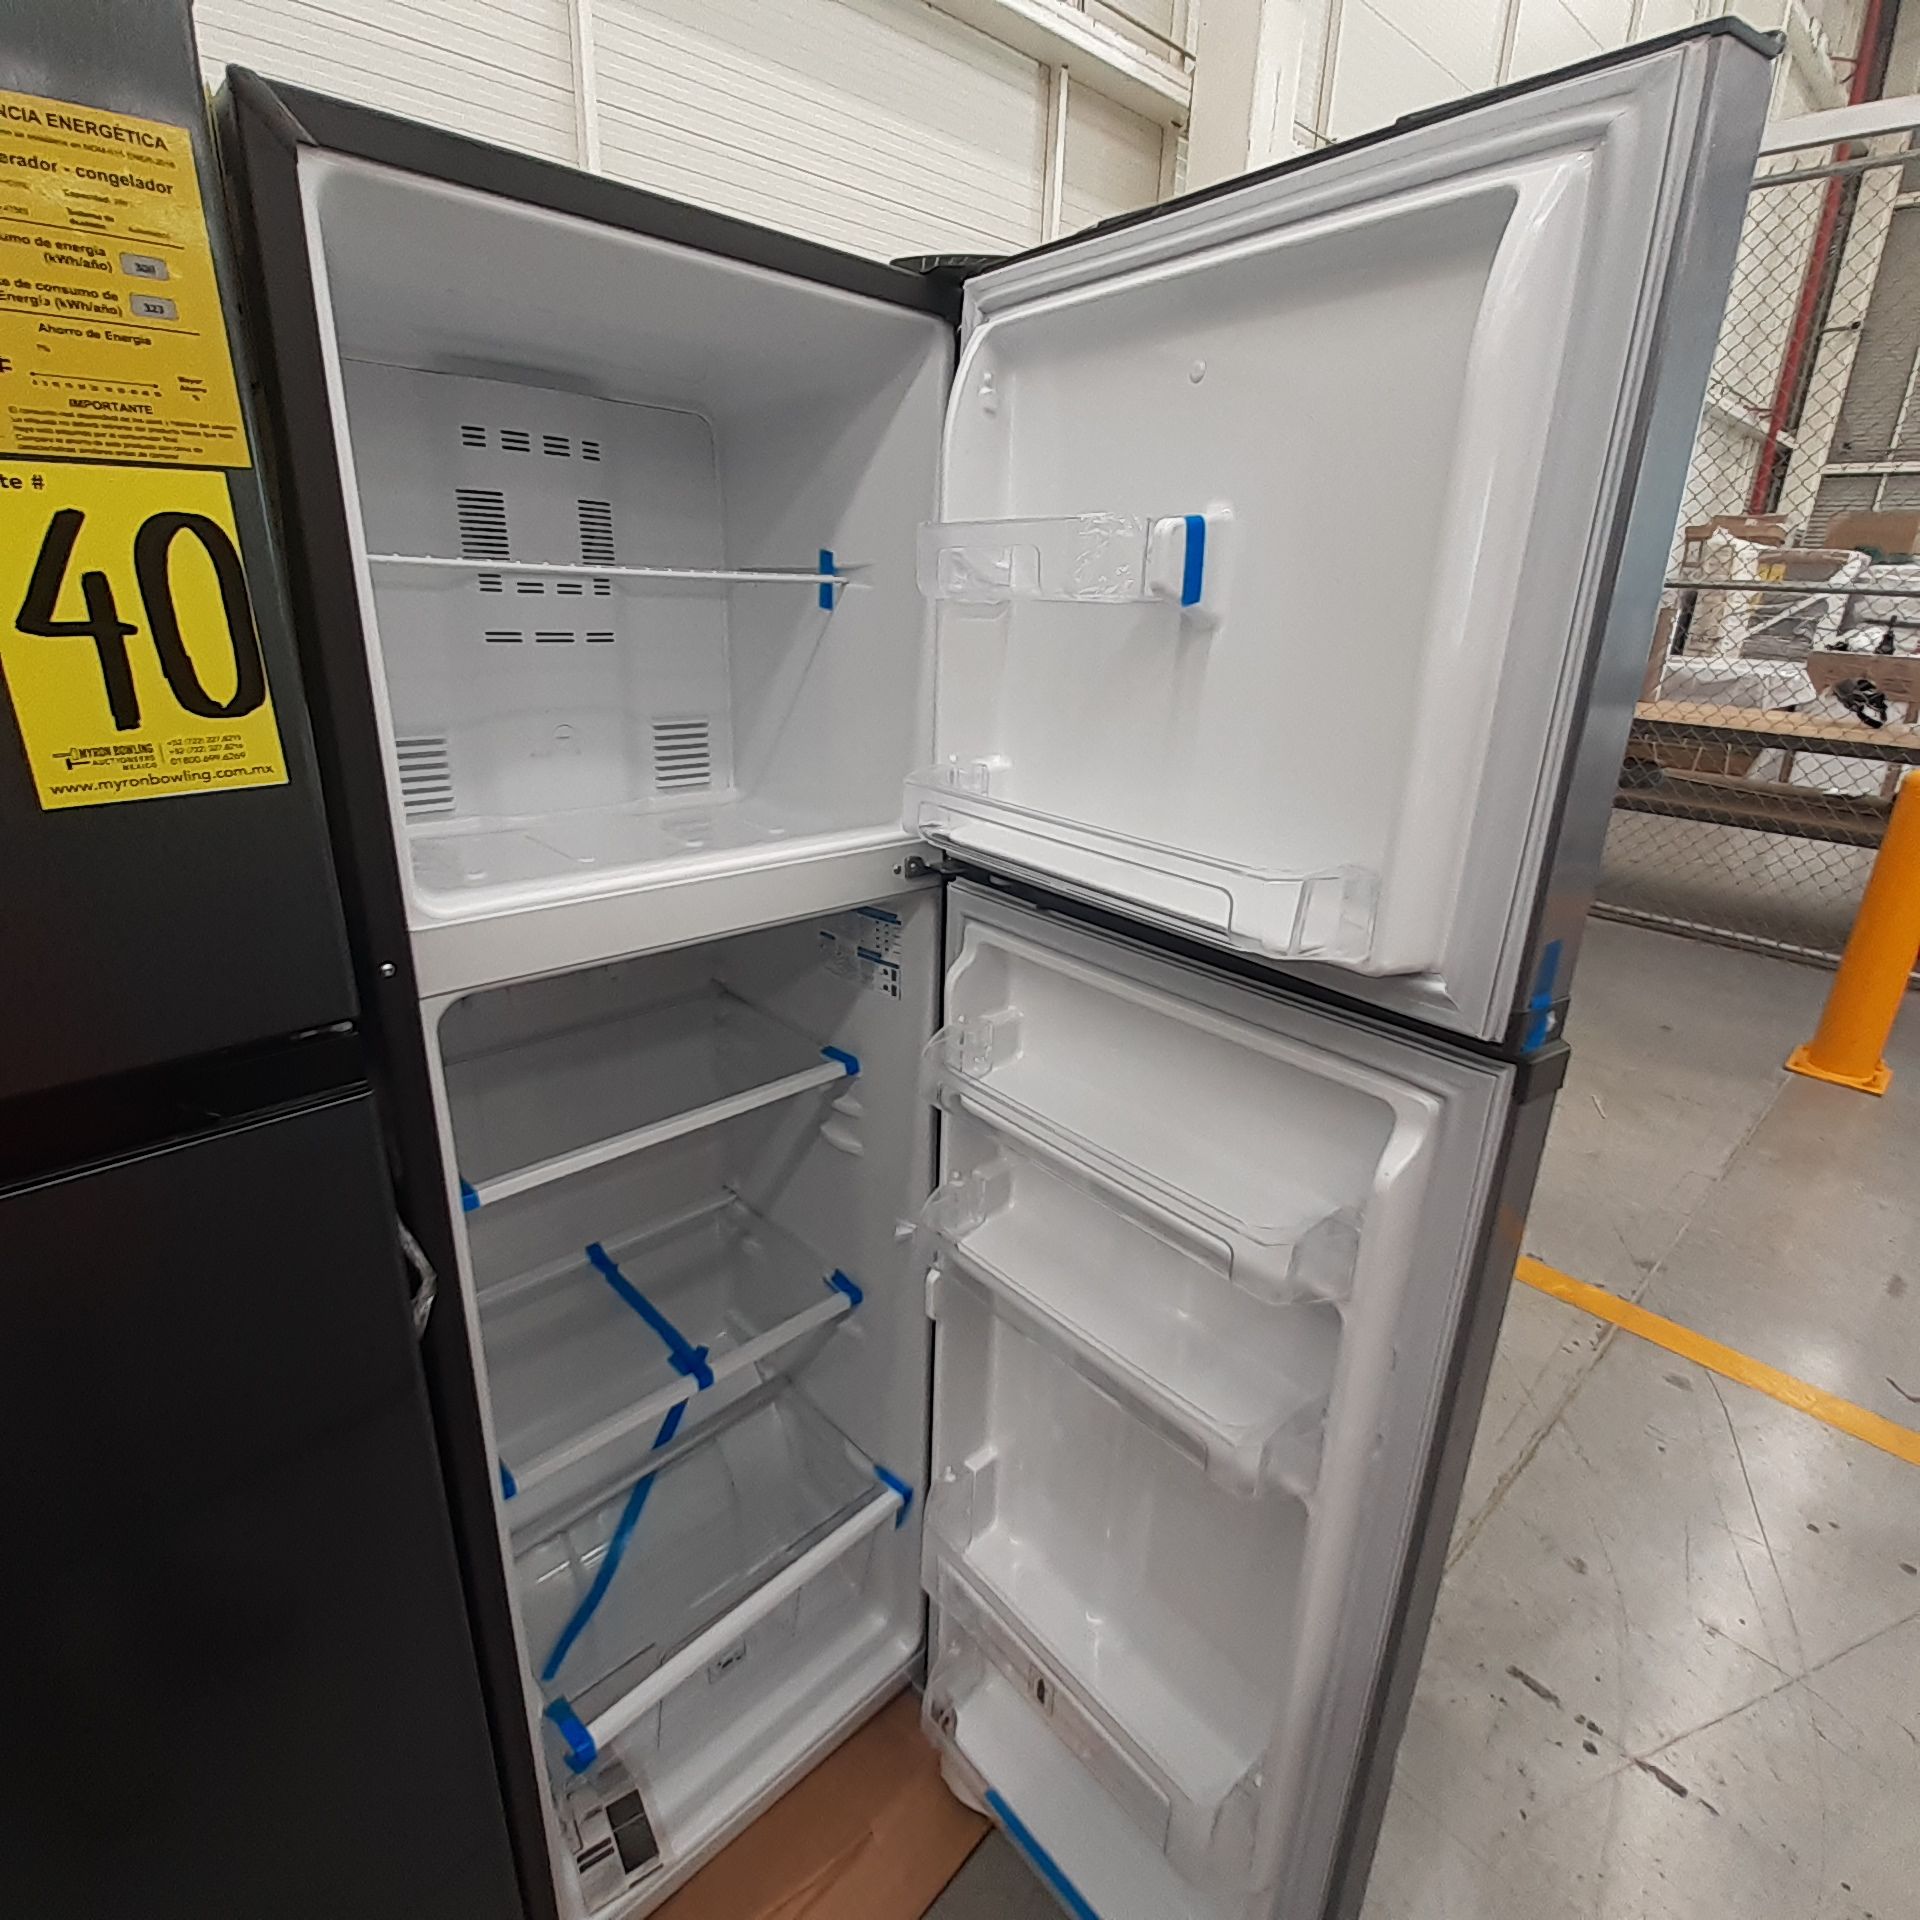 Lote De 2 Refrigeradores Contiene: 1 Refrigerador Marca Mabe, 1 Refrigerador Marca Hisense, Distinto - Image 5 of 14